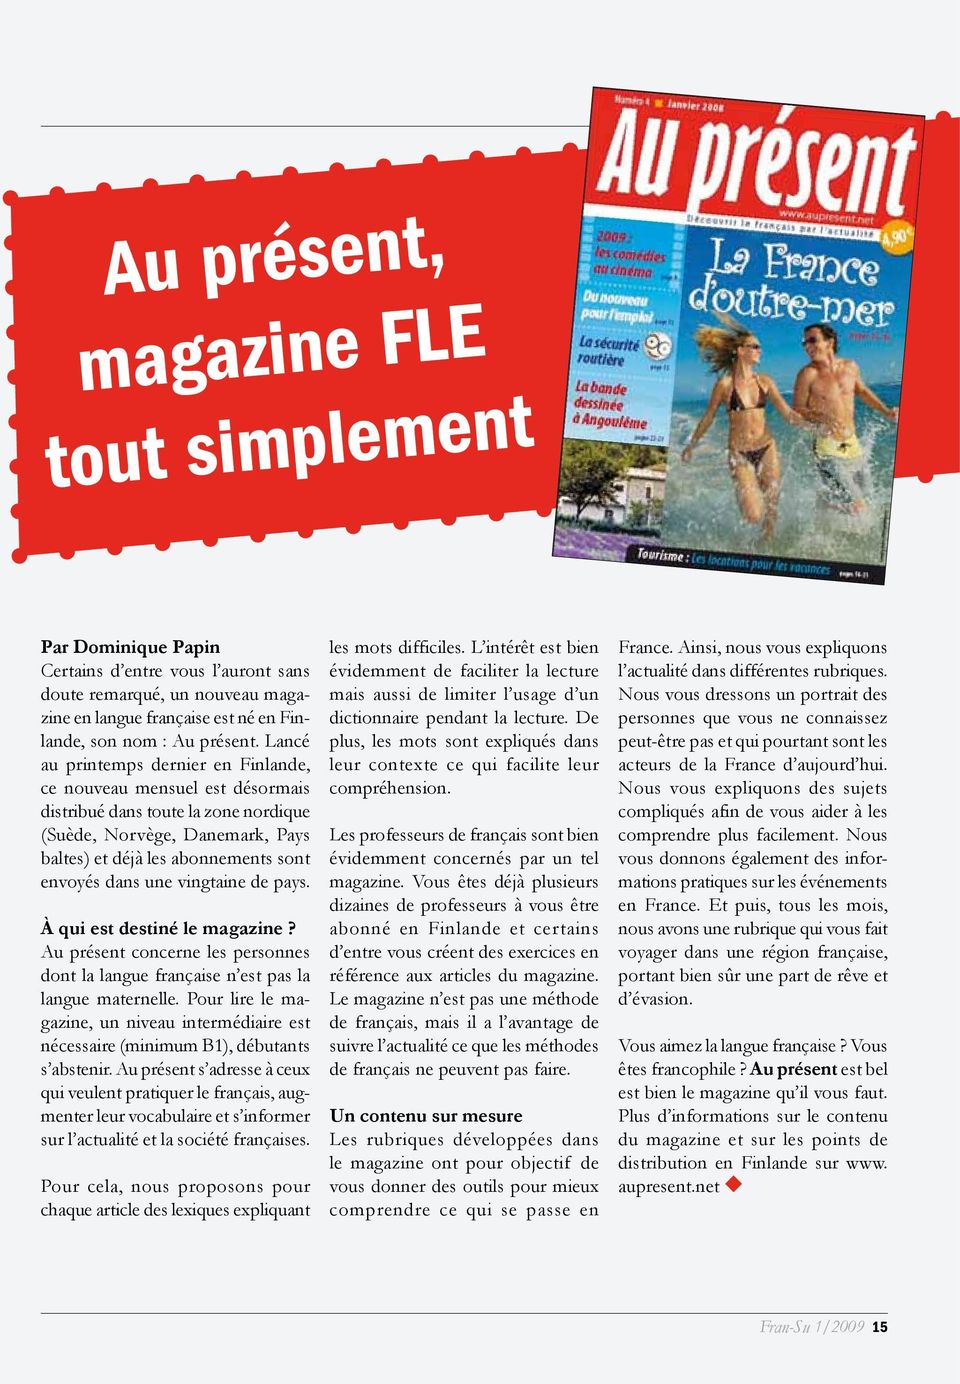 vingtaine de pays. À qui est destiné le magazine? Au présent concerne les personnes dont la langue française n est pas la langue maternelle.